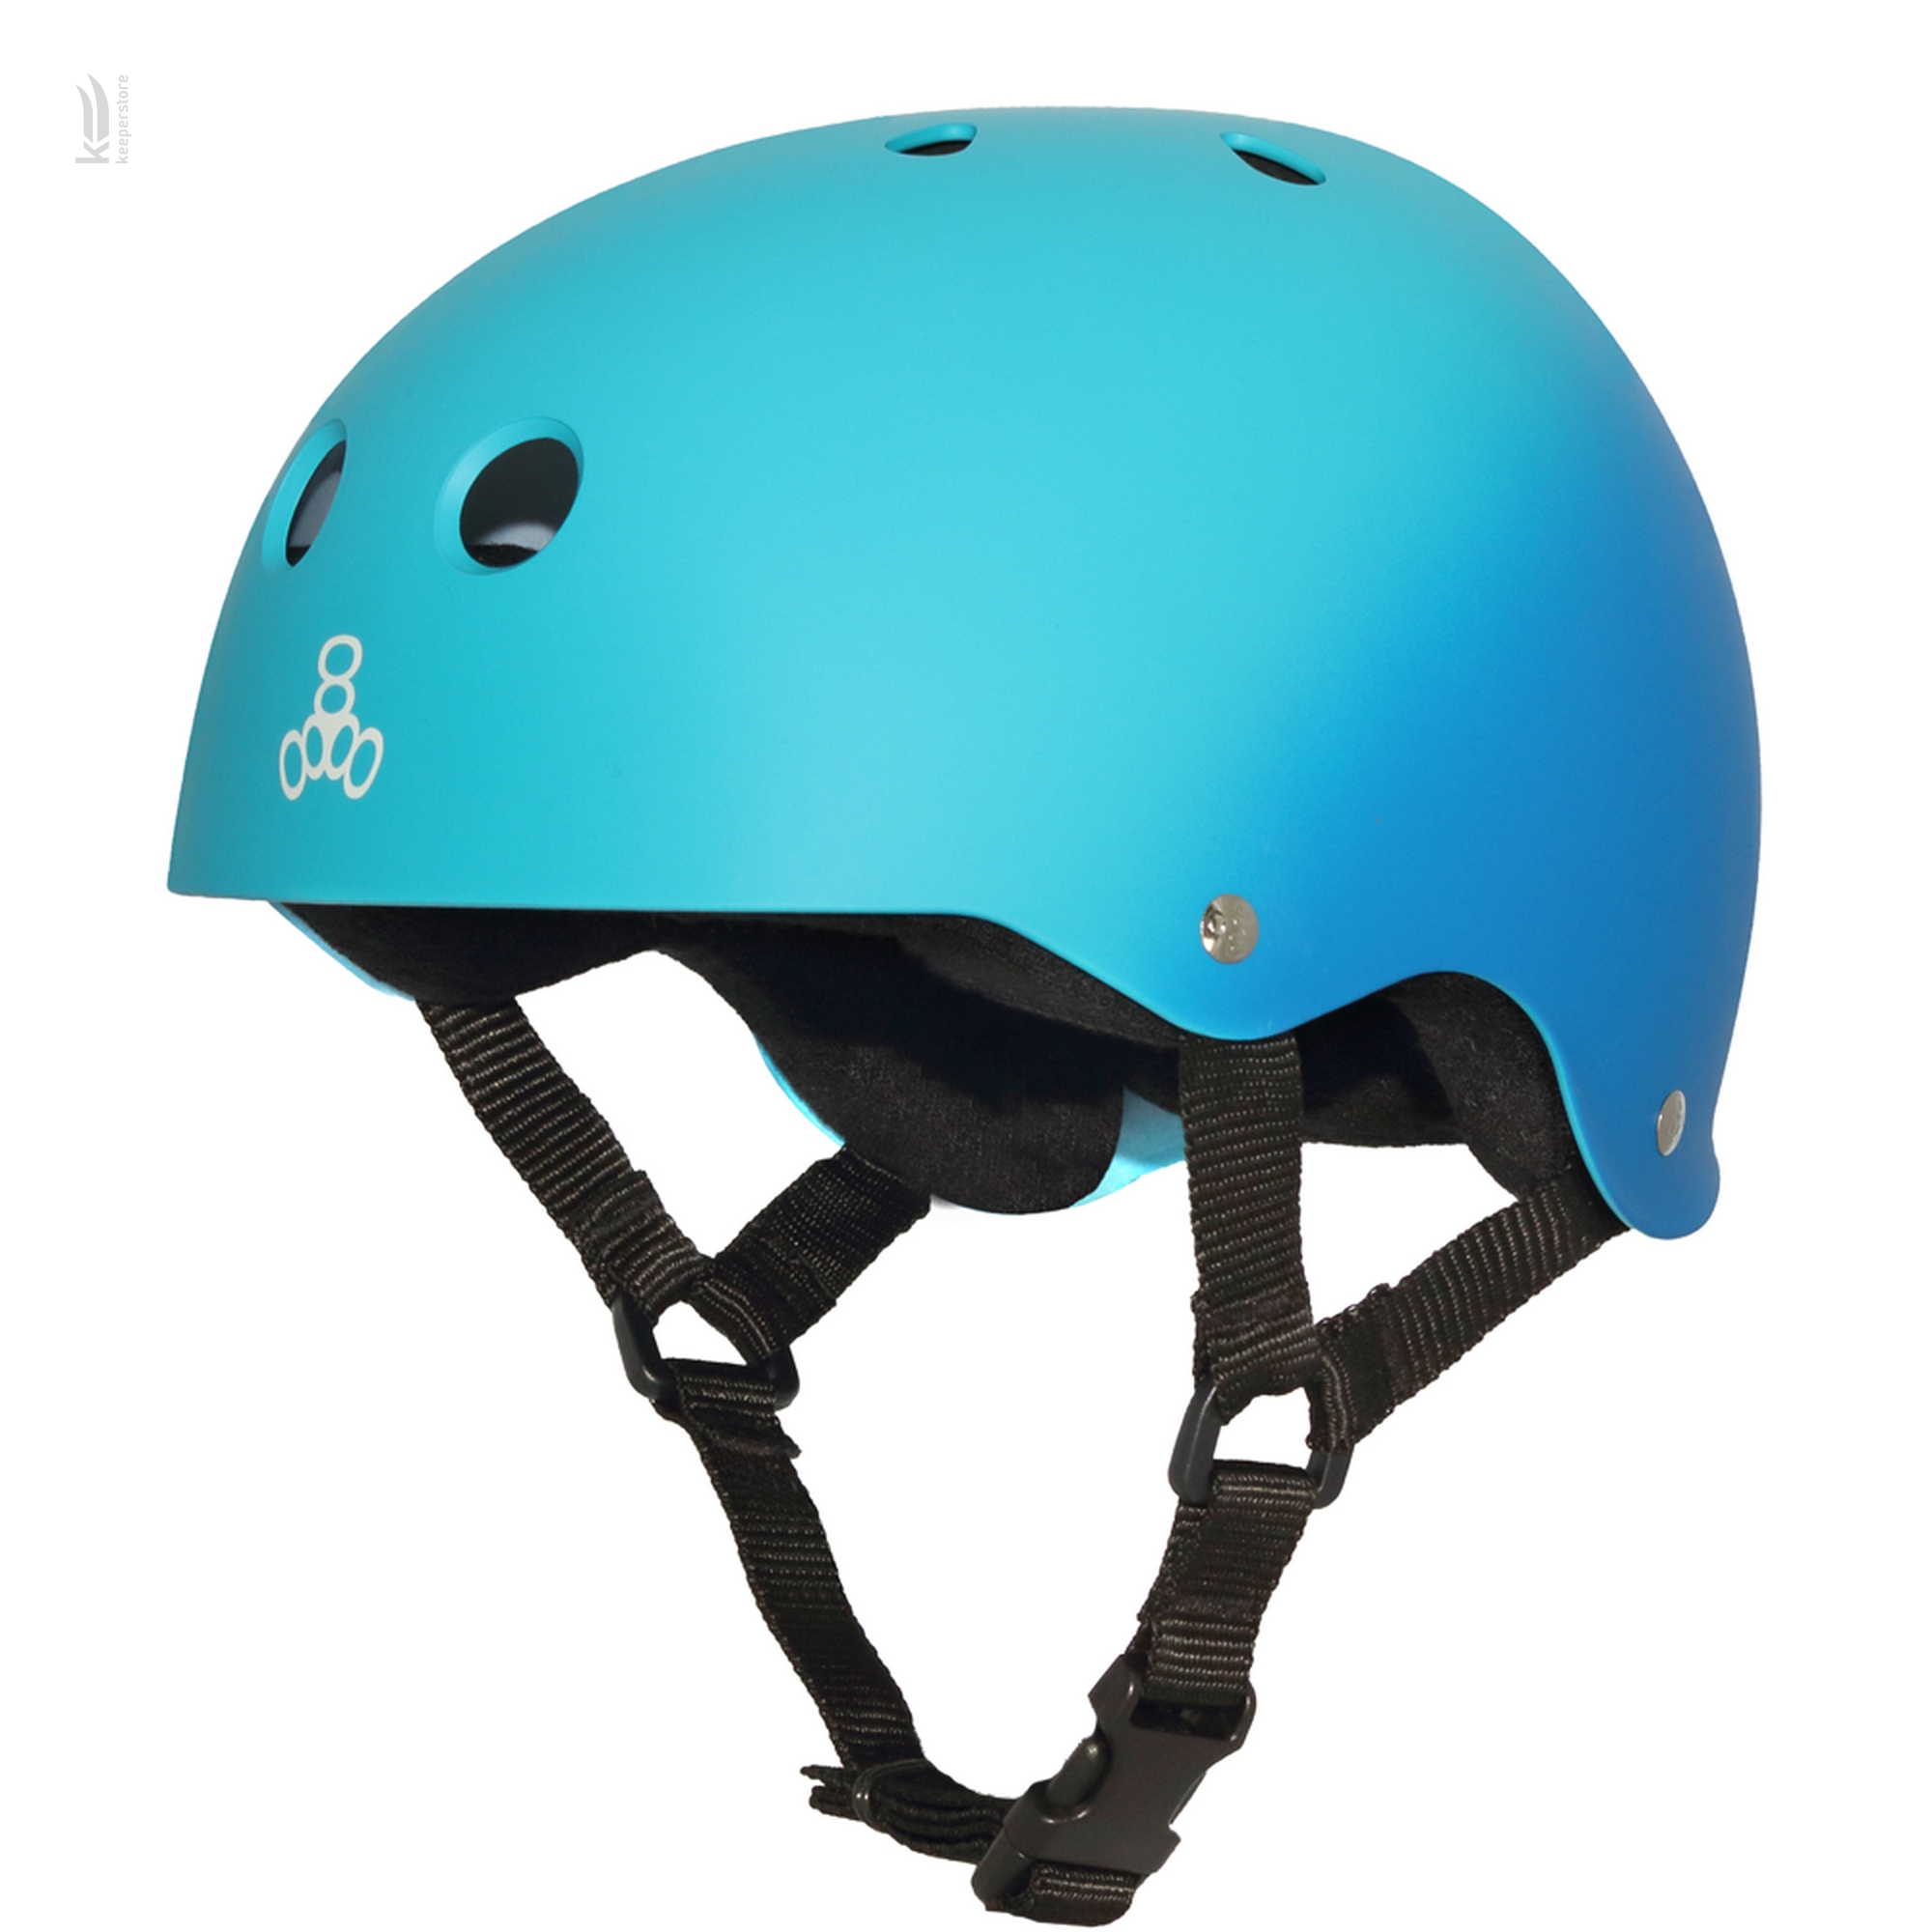 Купить шлем котелок для велосипеда Triple8 Sweatsaver Helmet Blue Fade (S) в Киеве